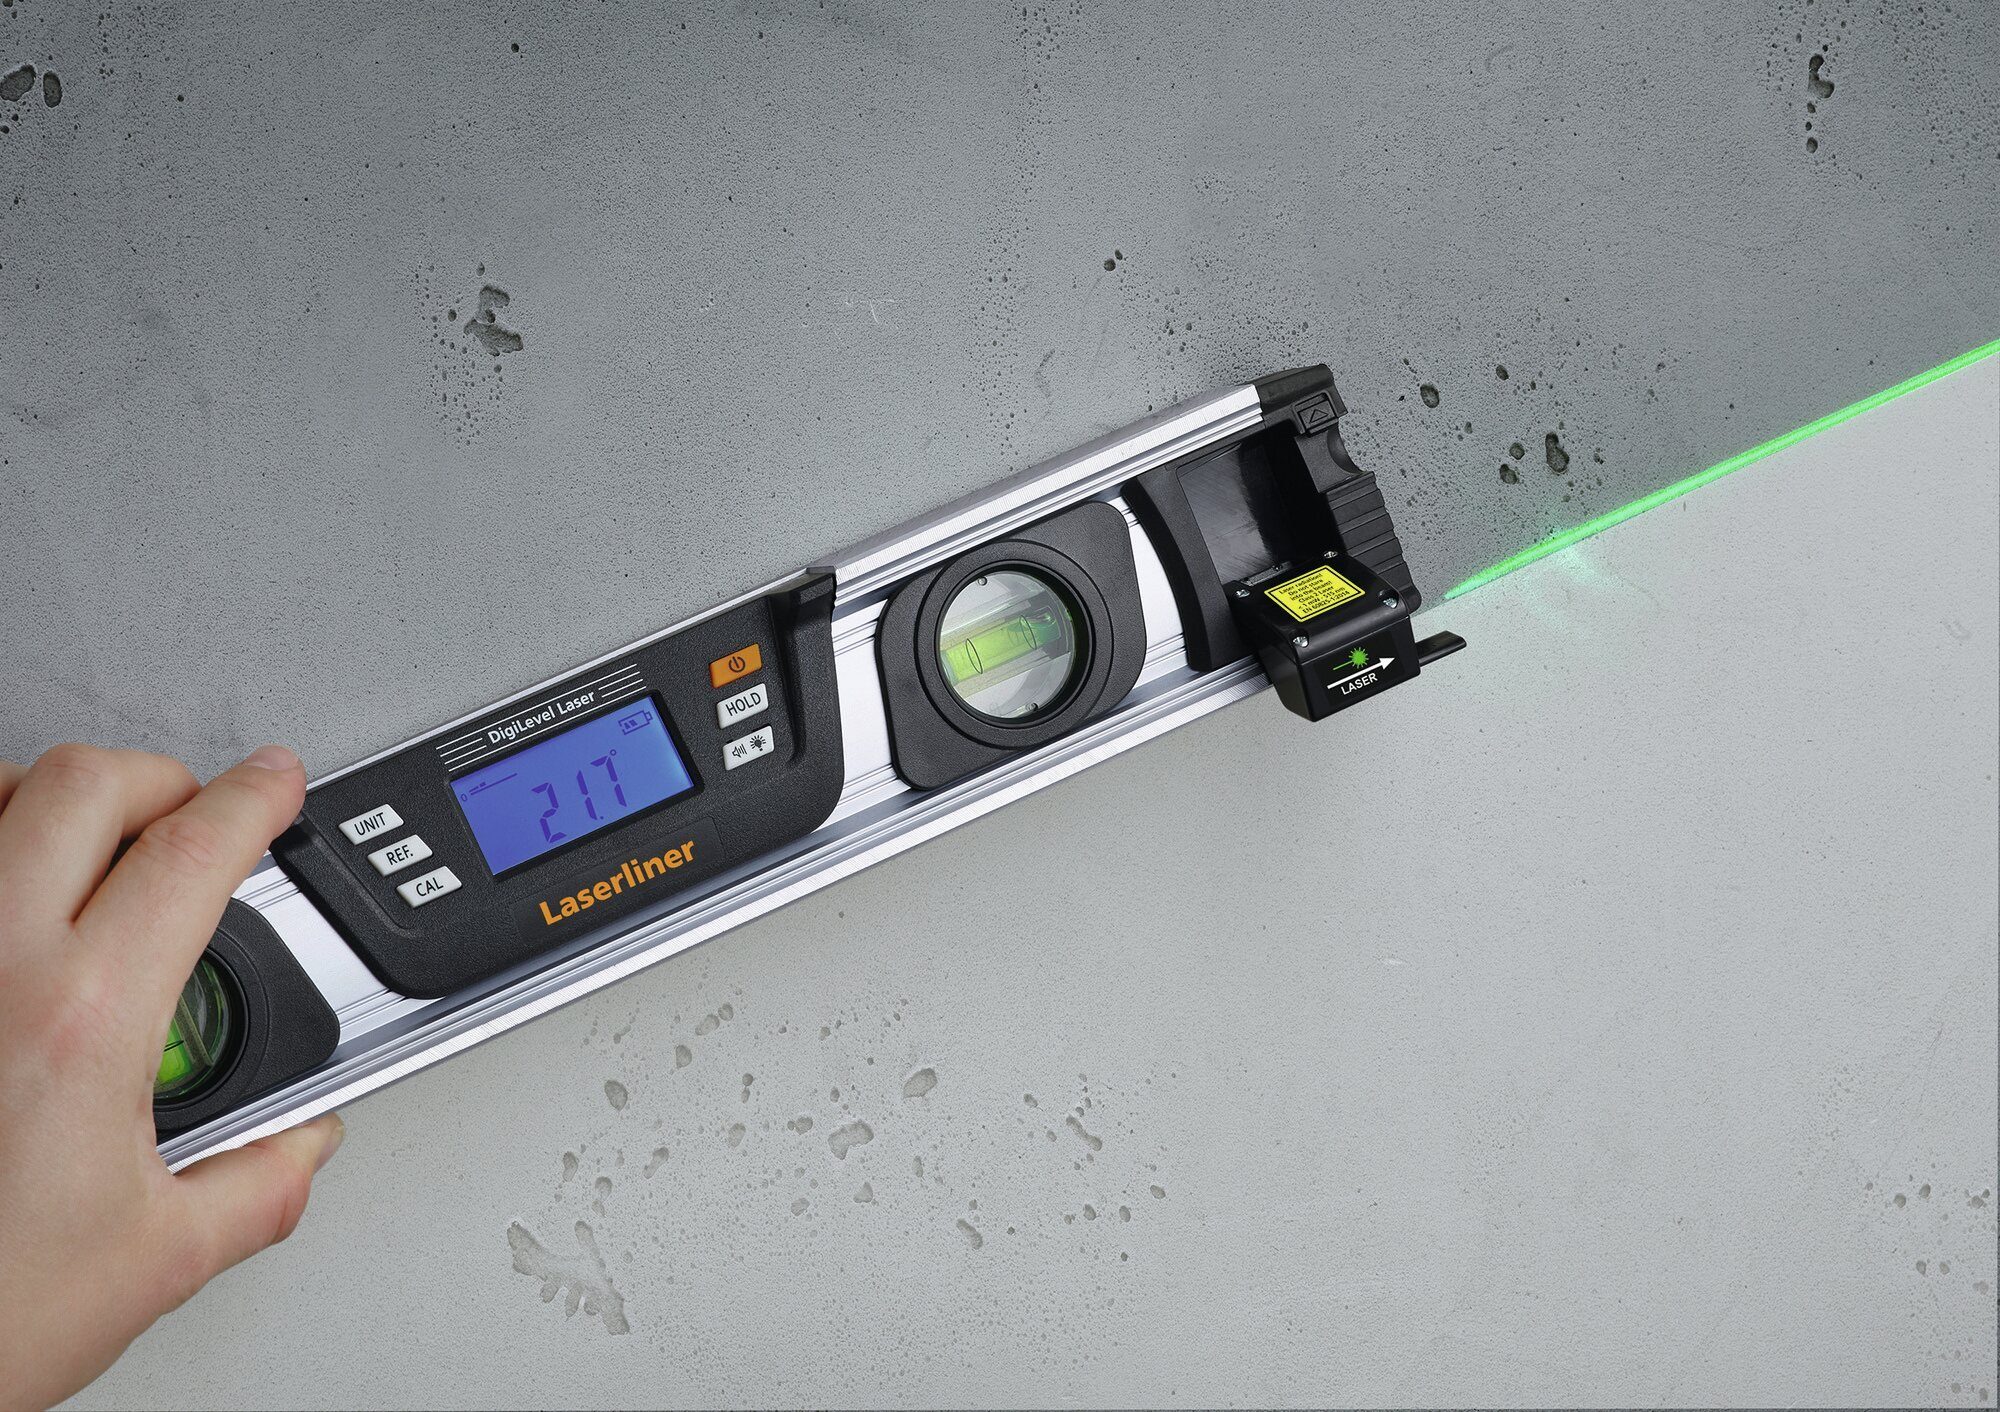 DigiLevel G40 Laser LASERLINER cm Wasserwaage, Laser 40